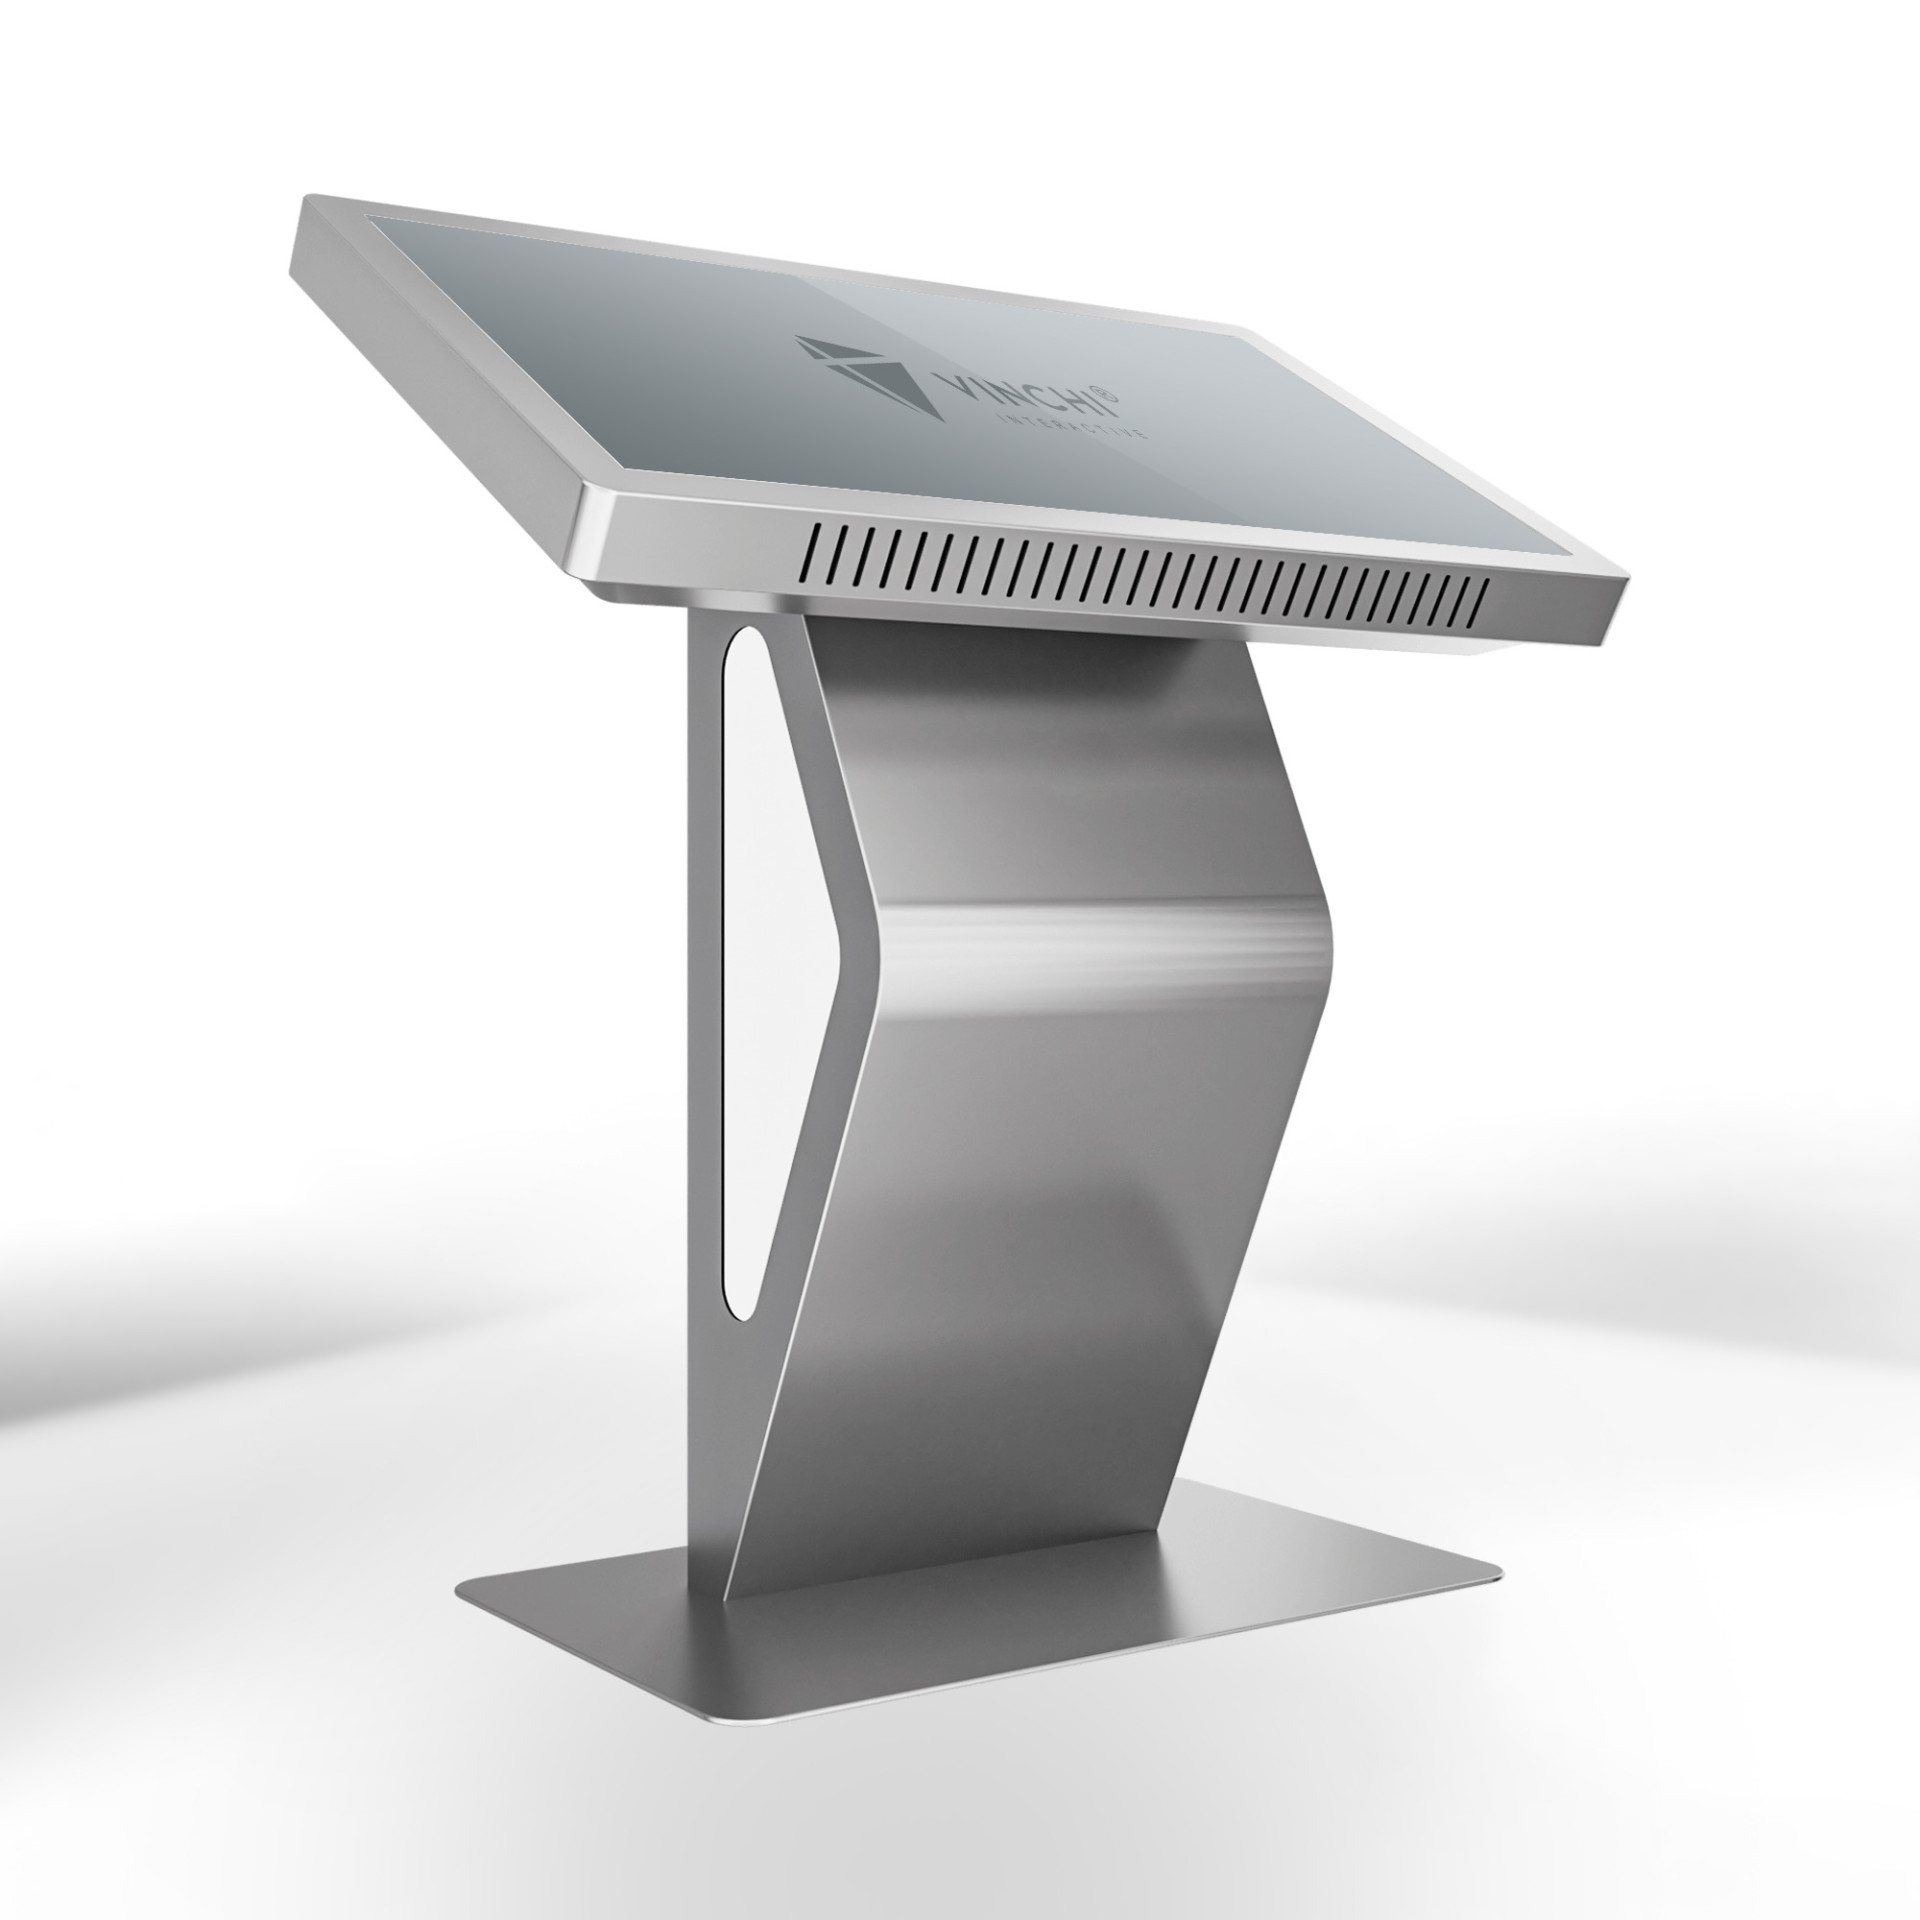 Интерактивный стол VINCHI 8 с диагональю 65 дюймов